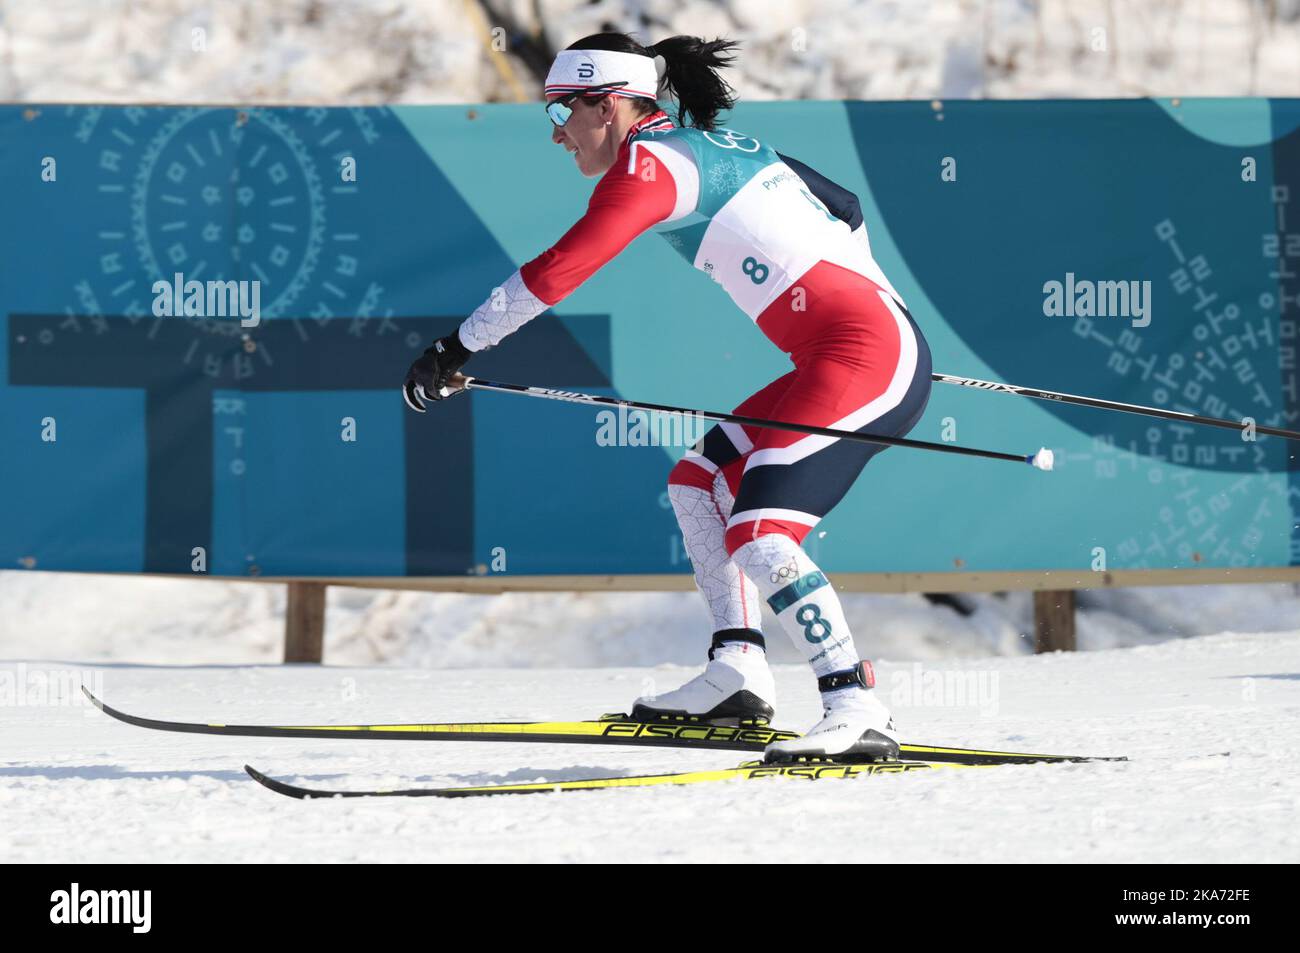 Marit Bjoergen, de Norvège, participe à la compétition féminine de ski de fond 30k aux Jeux olympiques d'hiver de 2018 à Pyeongchang, en Corée du Sud, le dimanche 25 février 2018. Photo: Lise Aaserud / NTB scanpi Banque D'Images